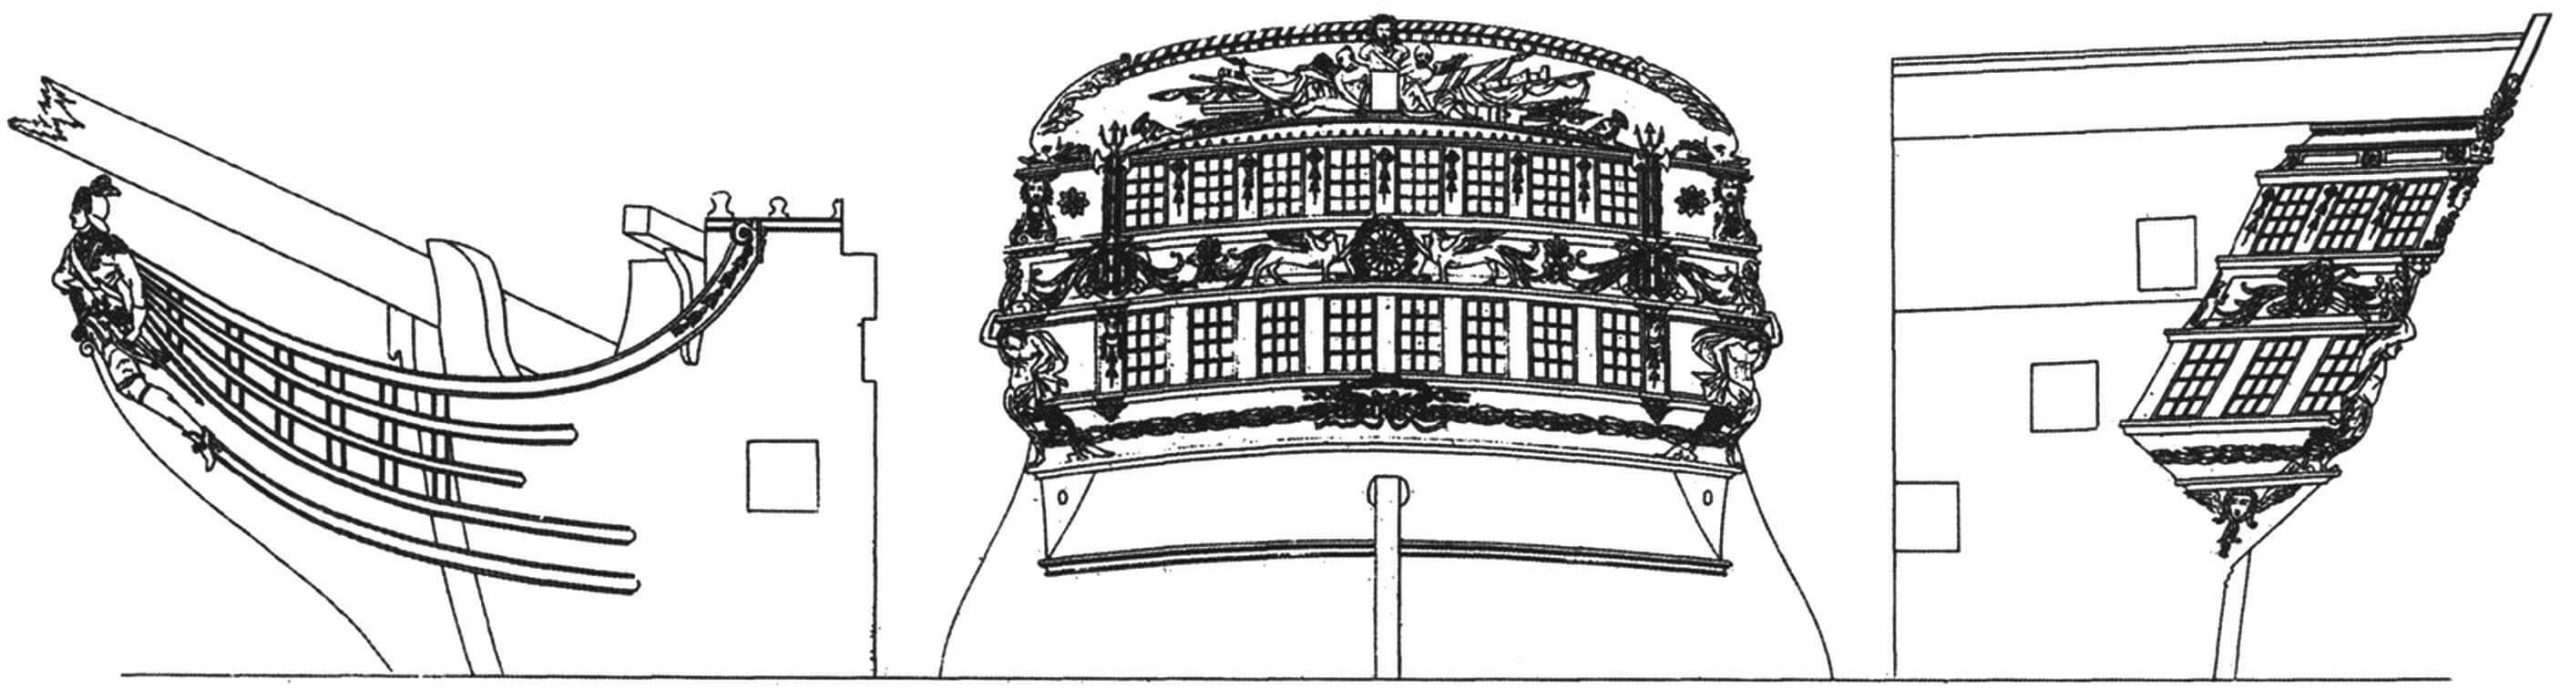 Декоративные украшения линейного корабля «Наполеон». Носовая фигура и корма